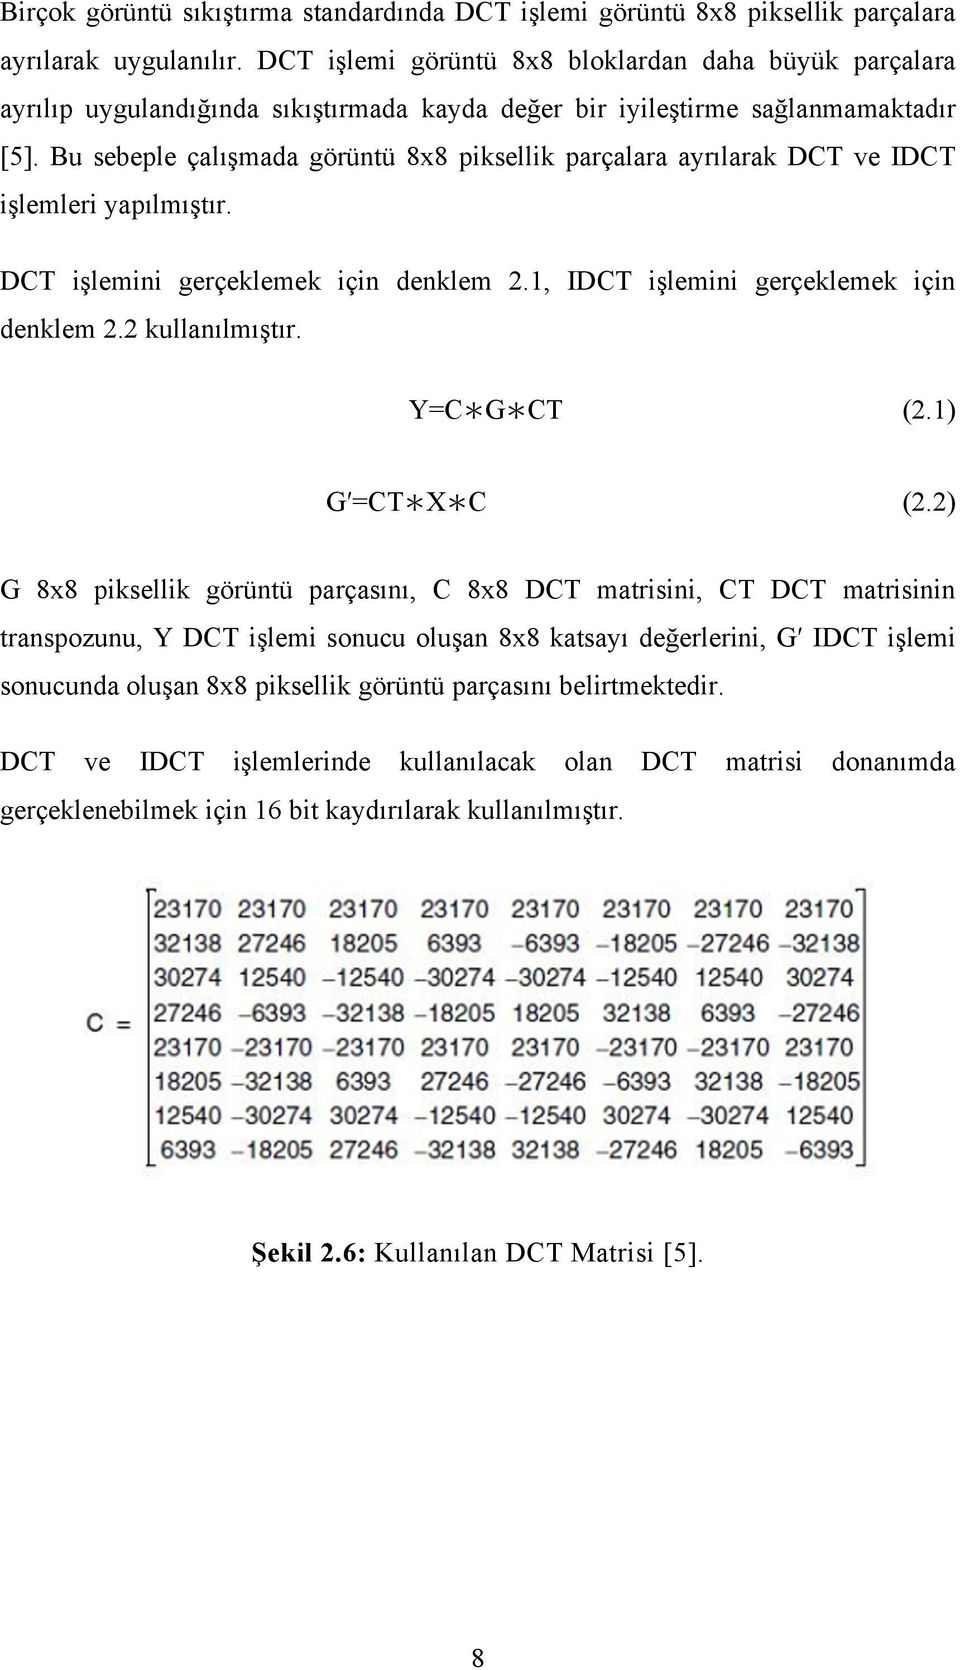 Bu sebeple çalışmada görüntü 8x8 piksellik parçalara ayrılarak DCT ve IDCT işlemleri yapılmıştır. DCT işlemini gerçeklemek için denklem 2.1, IDCT işlemini gerçeklemek için denklem 2.2 kullanılmıştır.